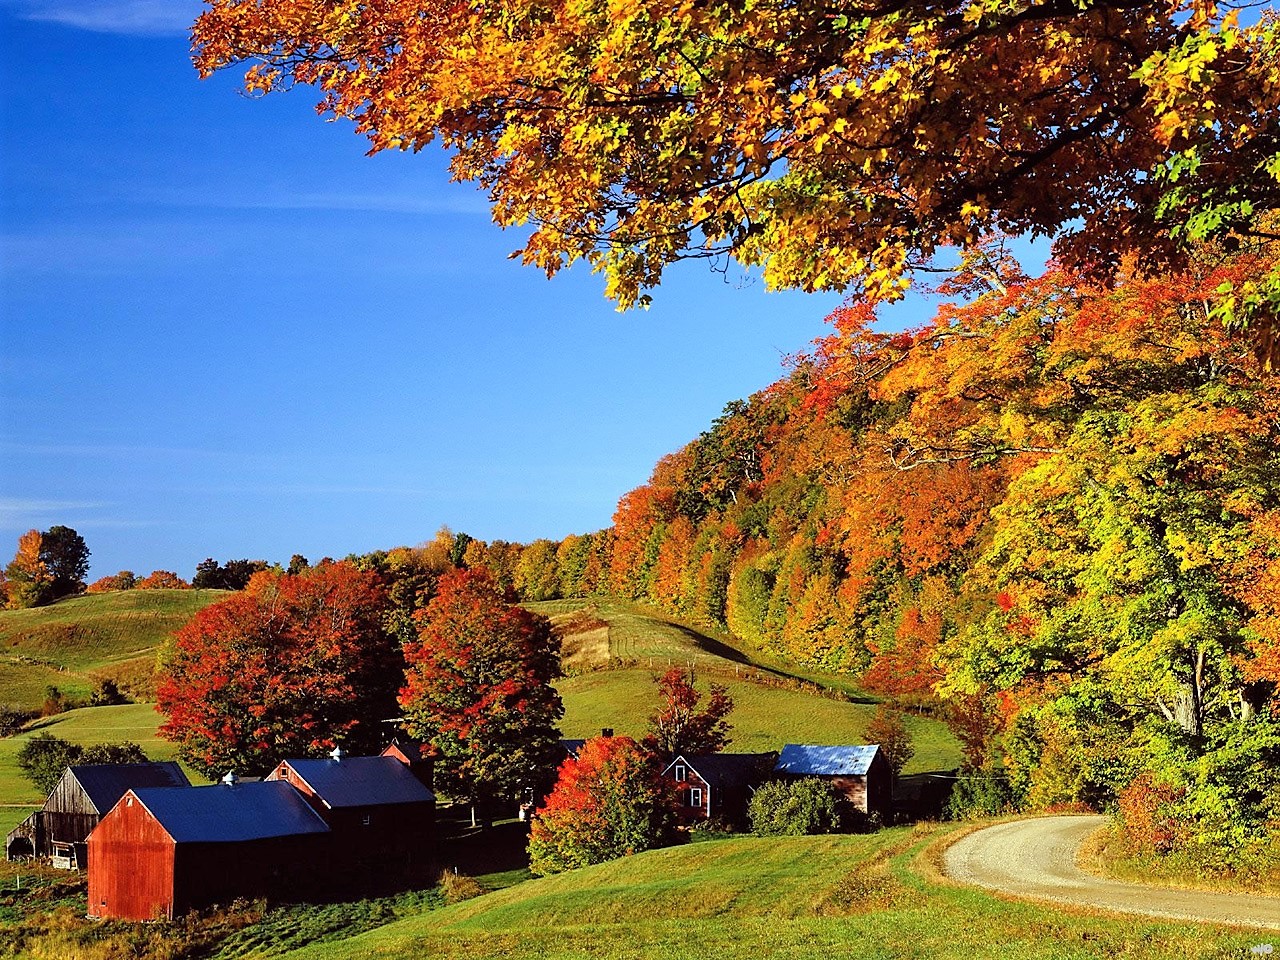 Northern Vermont in Autumn